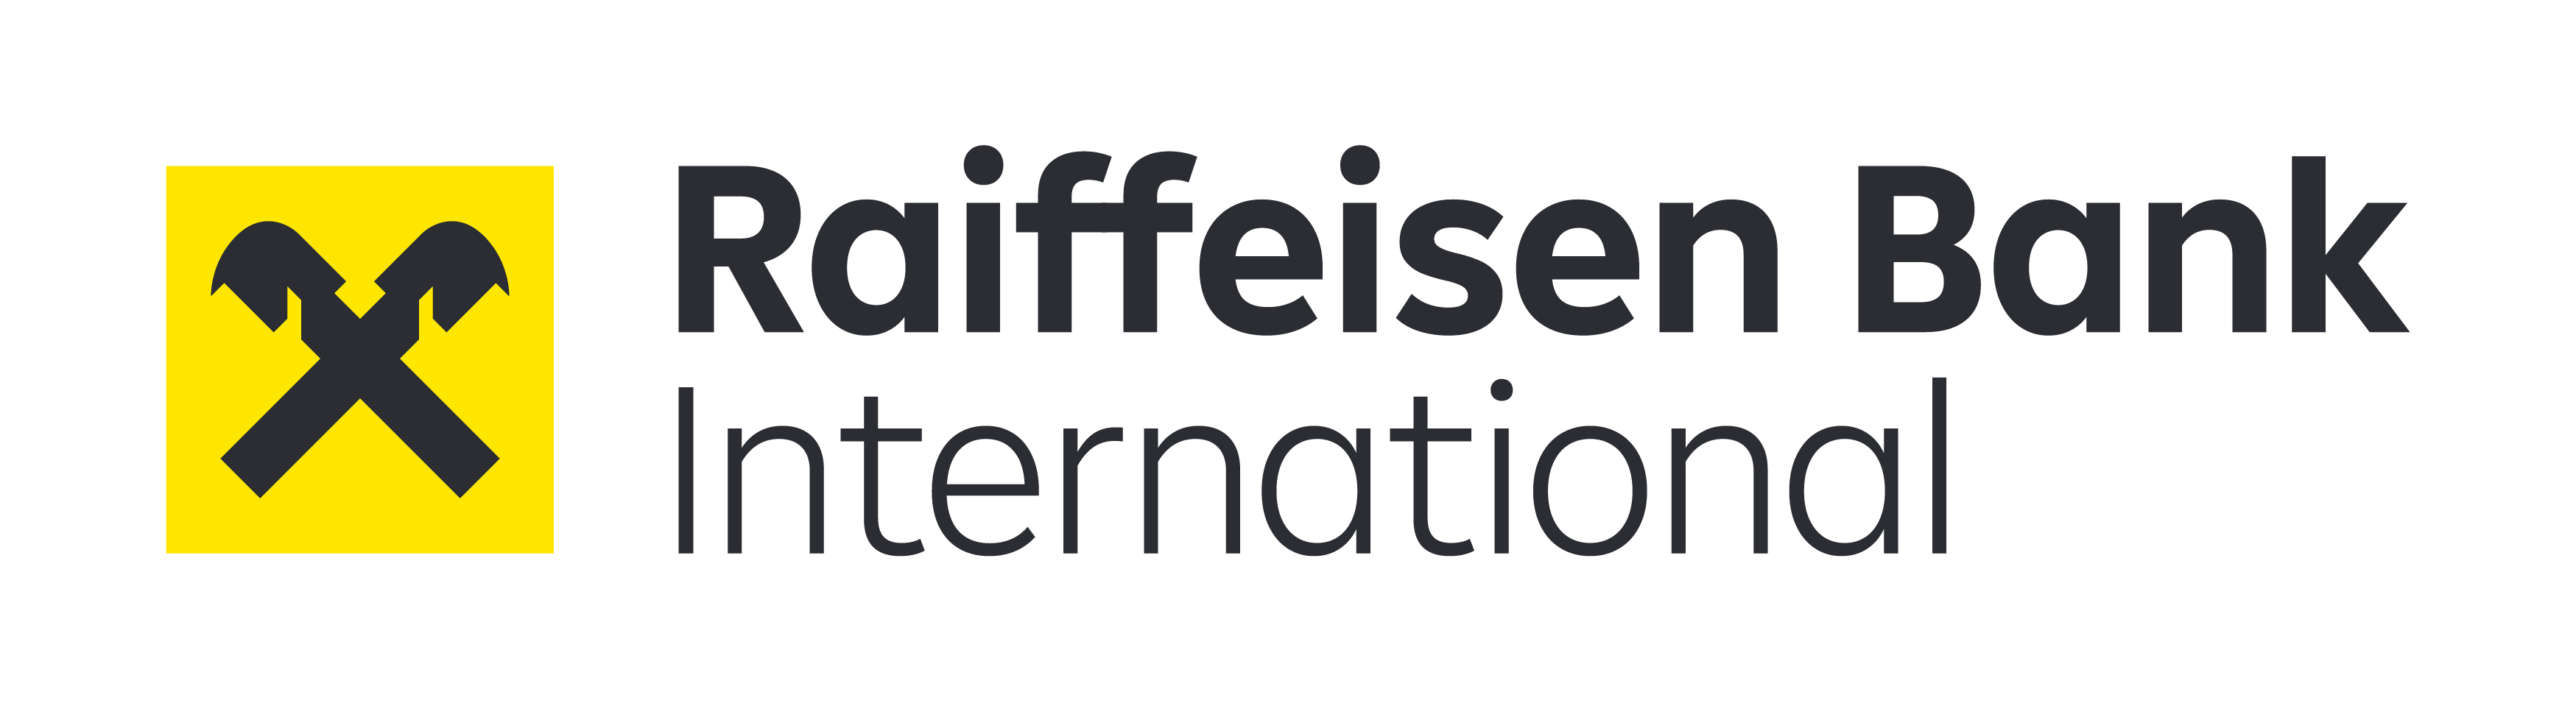 Logo Raiffeisen Bank International